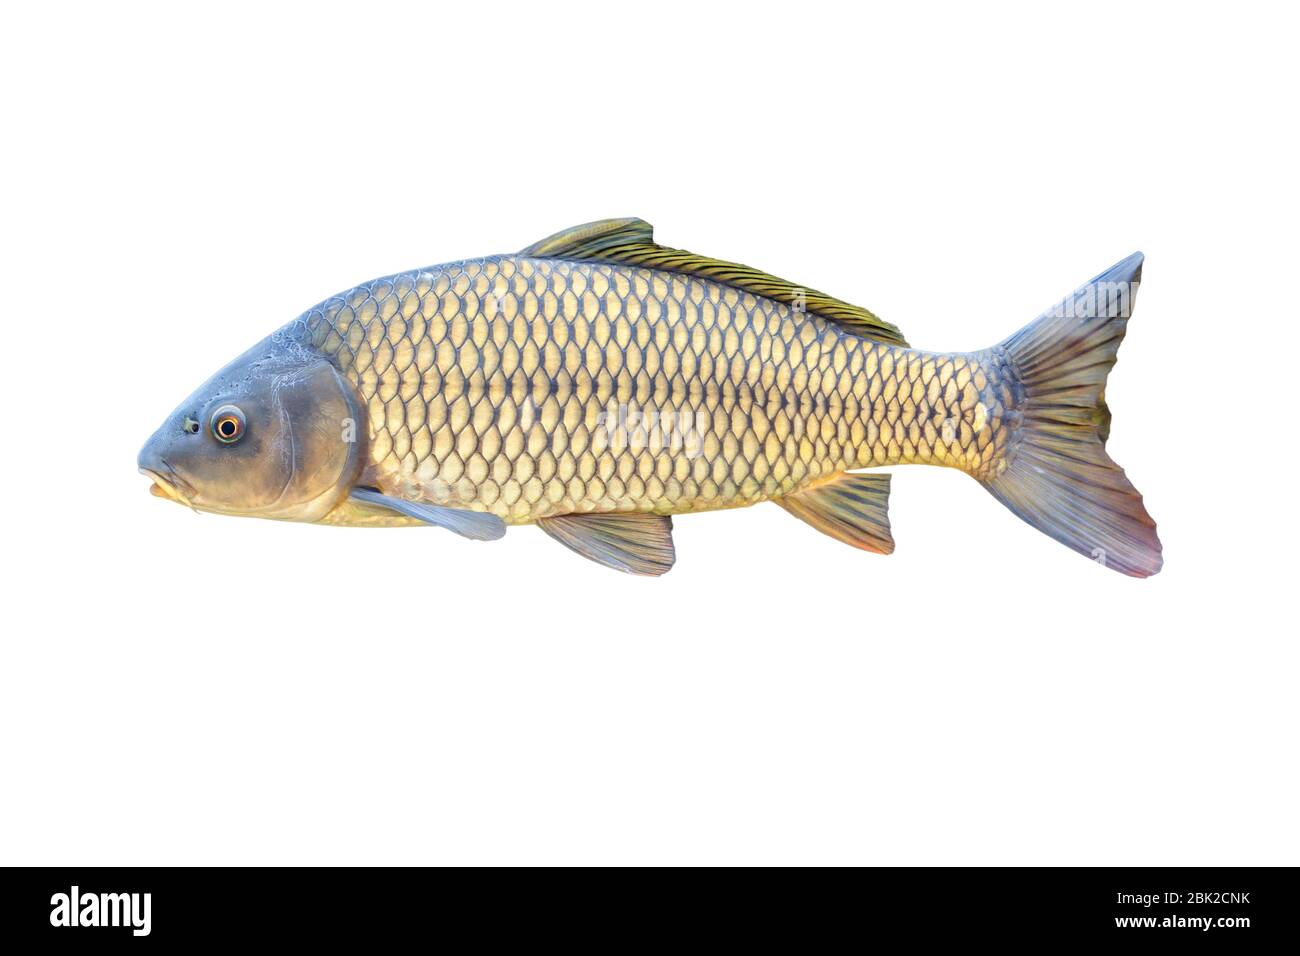 Carpe européenne ou Cyprinus carpio, une espèce de poisson d'eau douce. Isolé sur blanc Banque D'Images